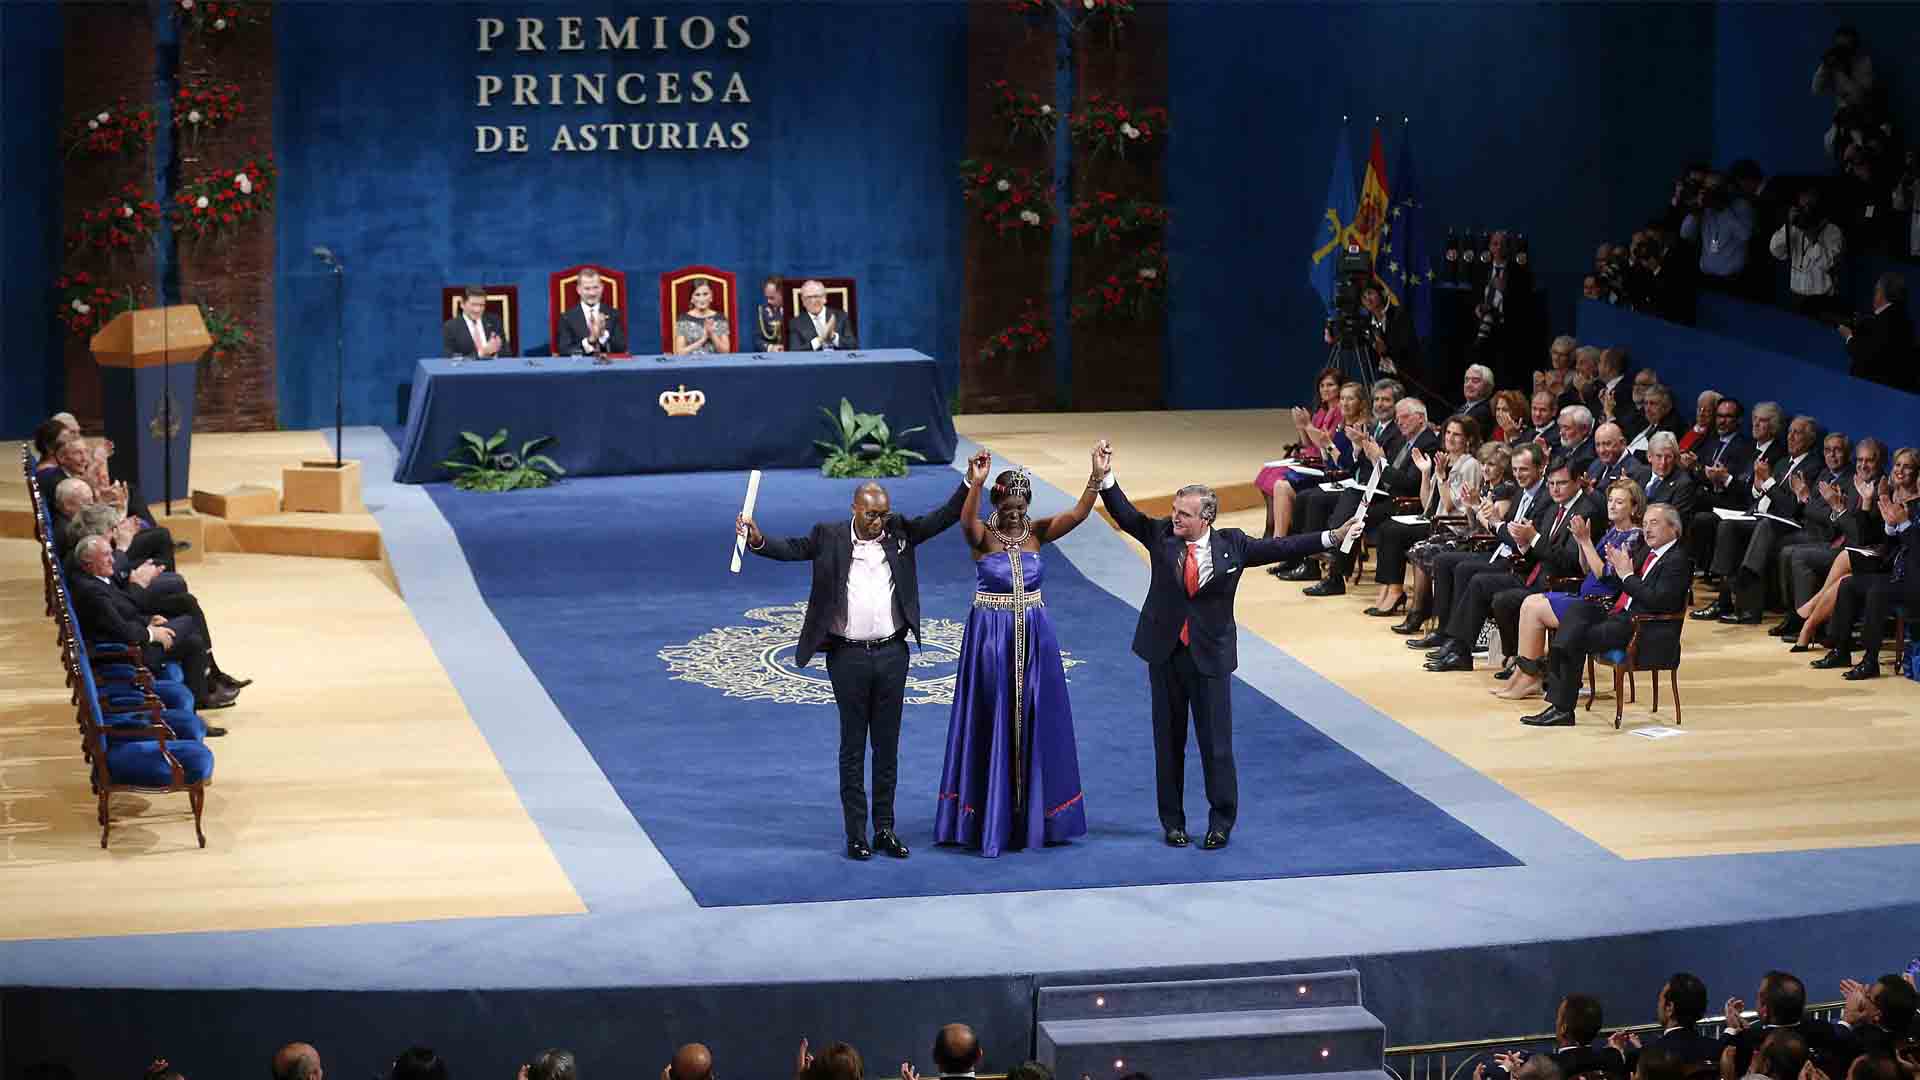 Los Premios Princesa de Asturias homenajean también a la Constitución en su 40 aniversario